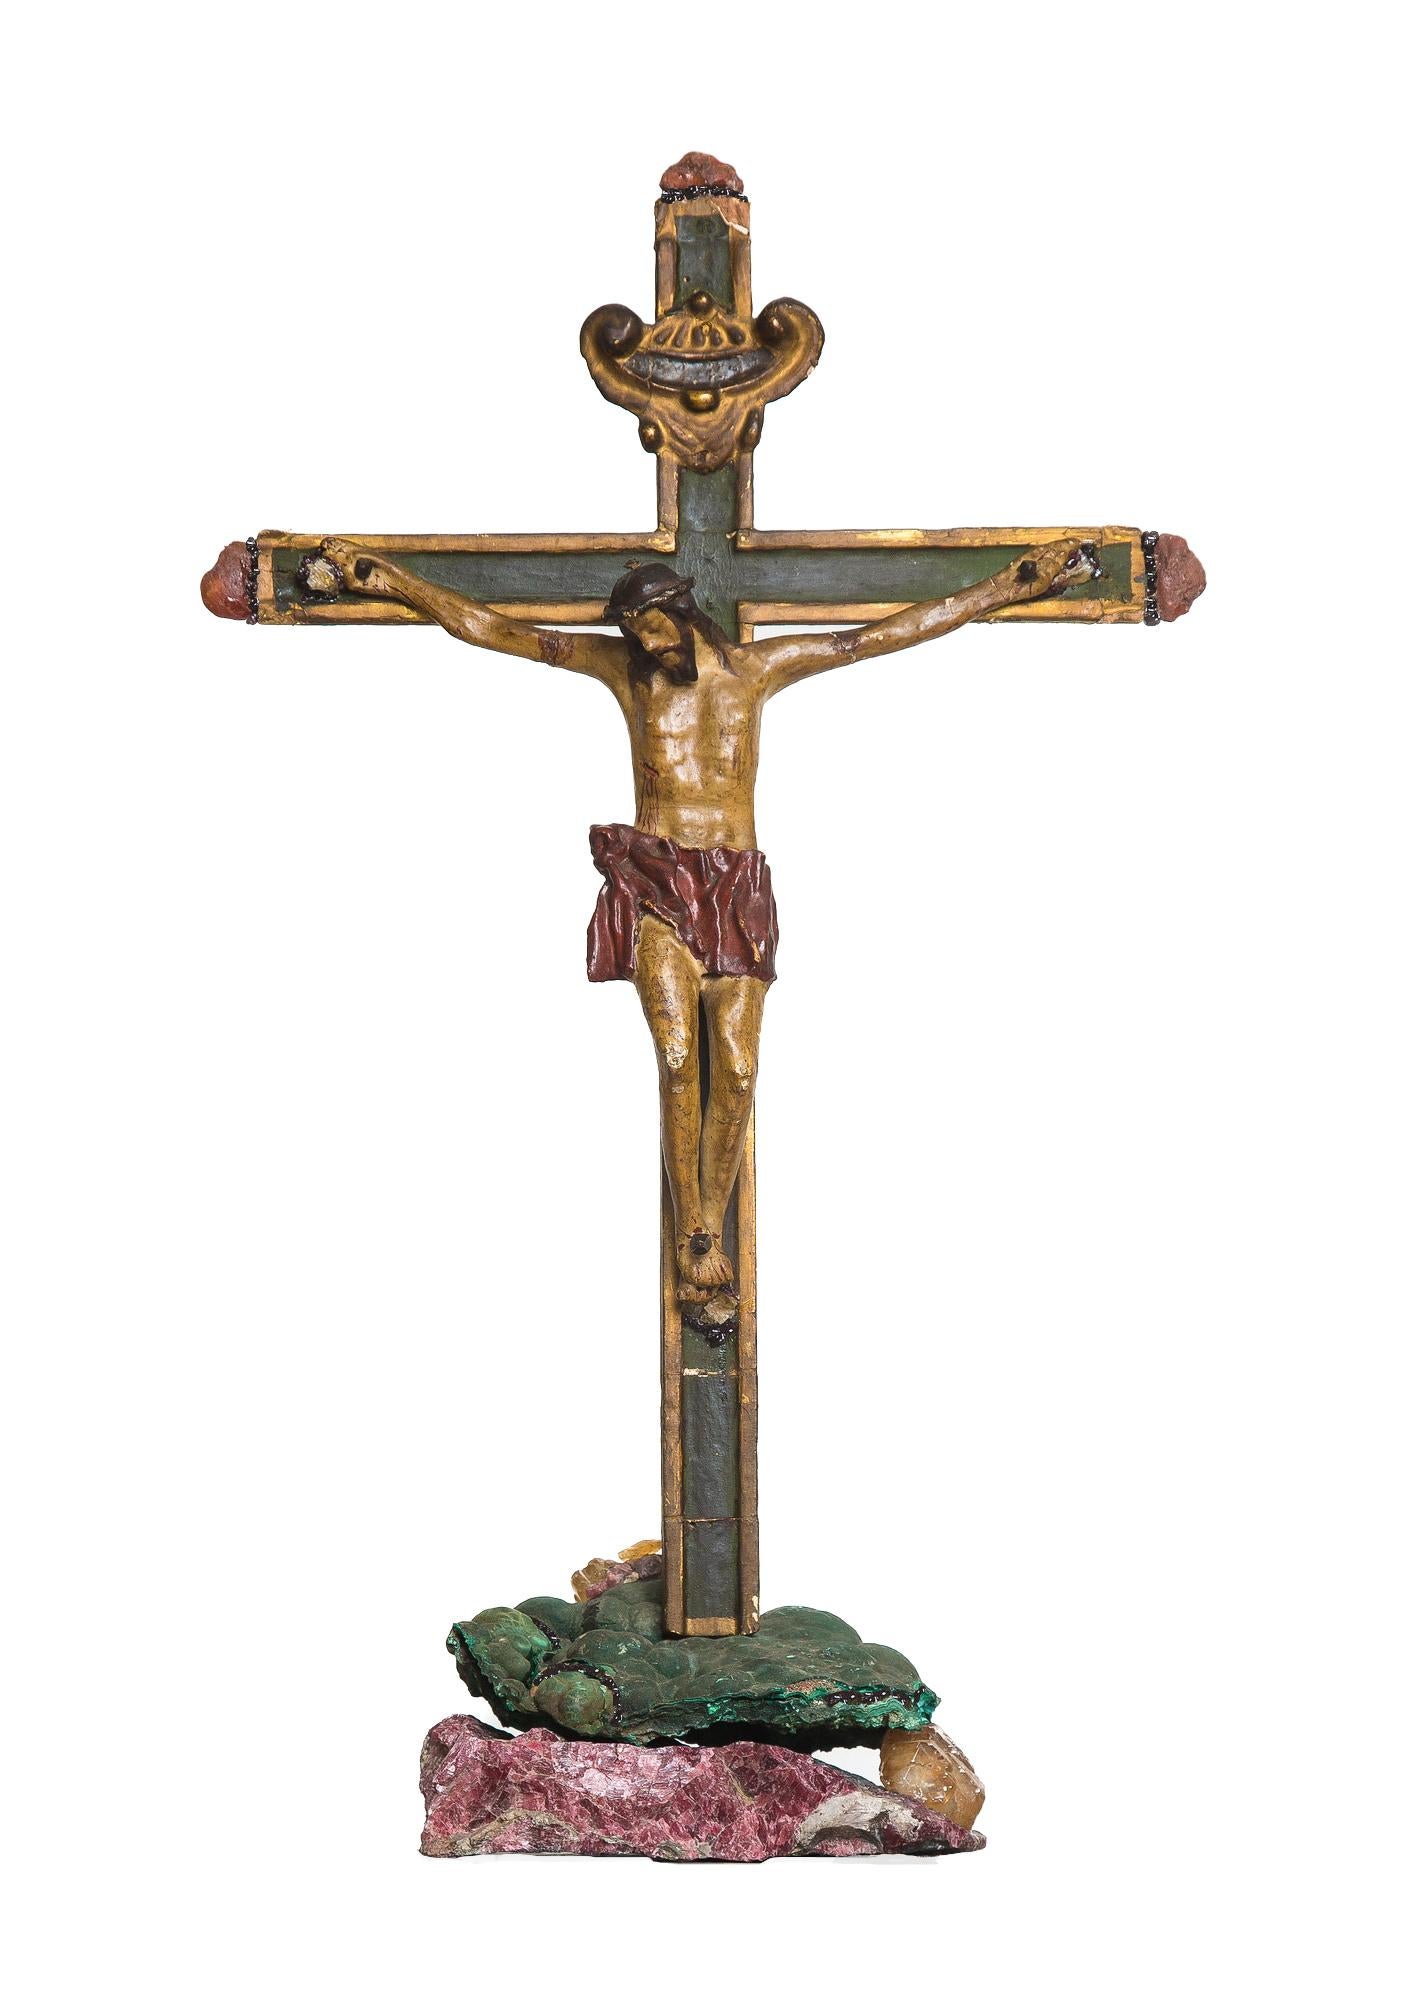 Crucifix italien du 18e siècle monté sur malachite verte, calcite avec fluorine et grenat framboise. La pièce est ornée de galets de cornaline et de grenat. Les minéraux proviennent du monde entier : la malachite verte vient du Congo, le cristal de